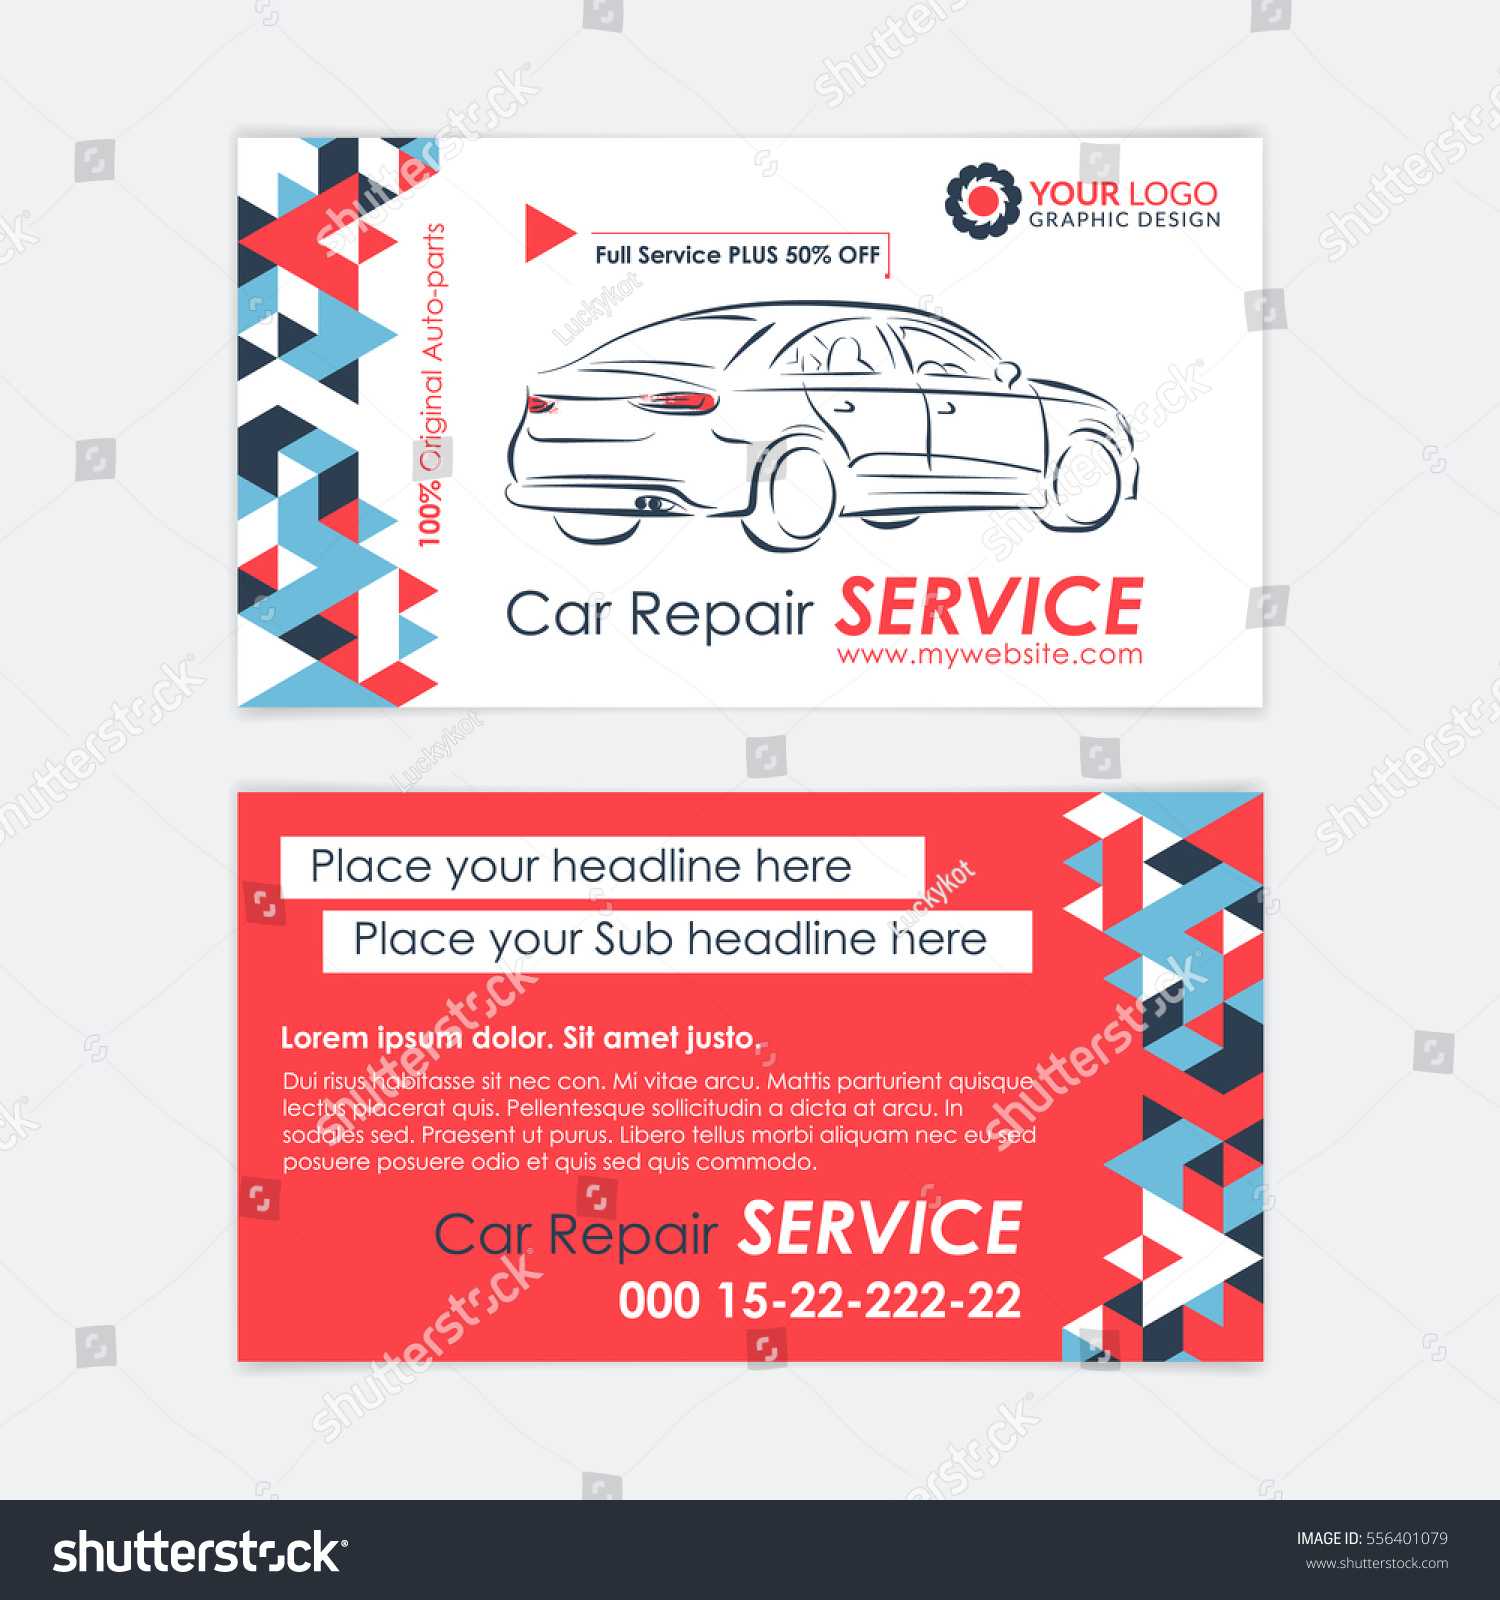 Automotive Service Business Card Template Car Stock Vector Intended For Automotive Business Card Templates